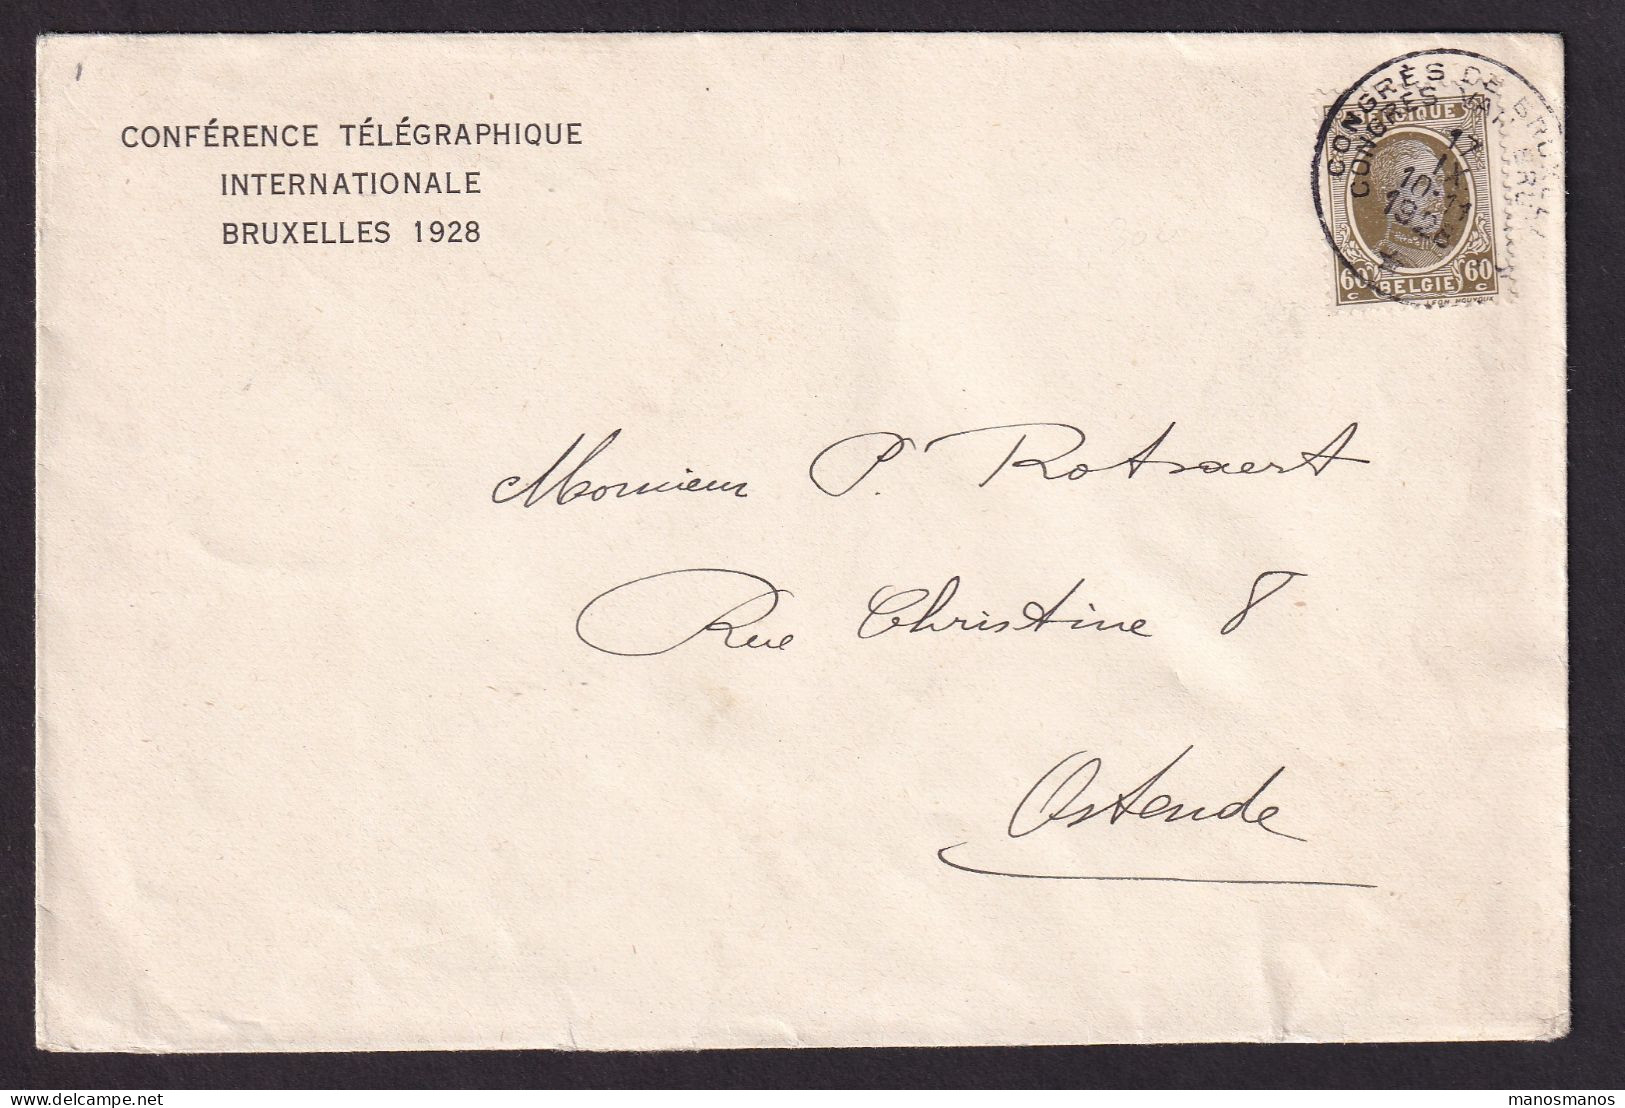 DDEE 848 -- Enveloppe Entete Conférence Télégraphique Internationale BRUXELLES 1928 - TP Houyoux Cachet Du Congrès RRR - Telegramme